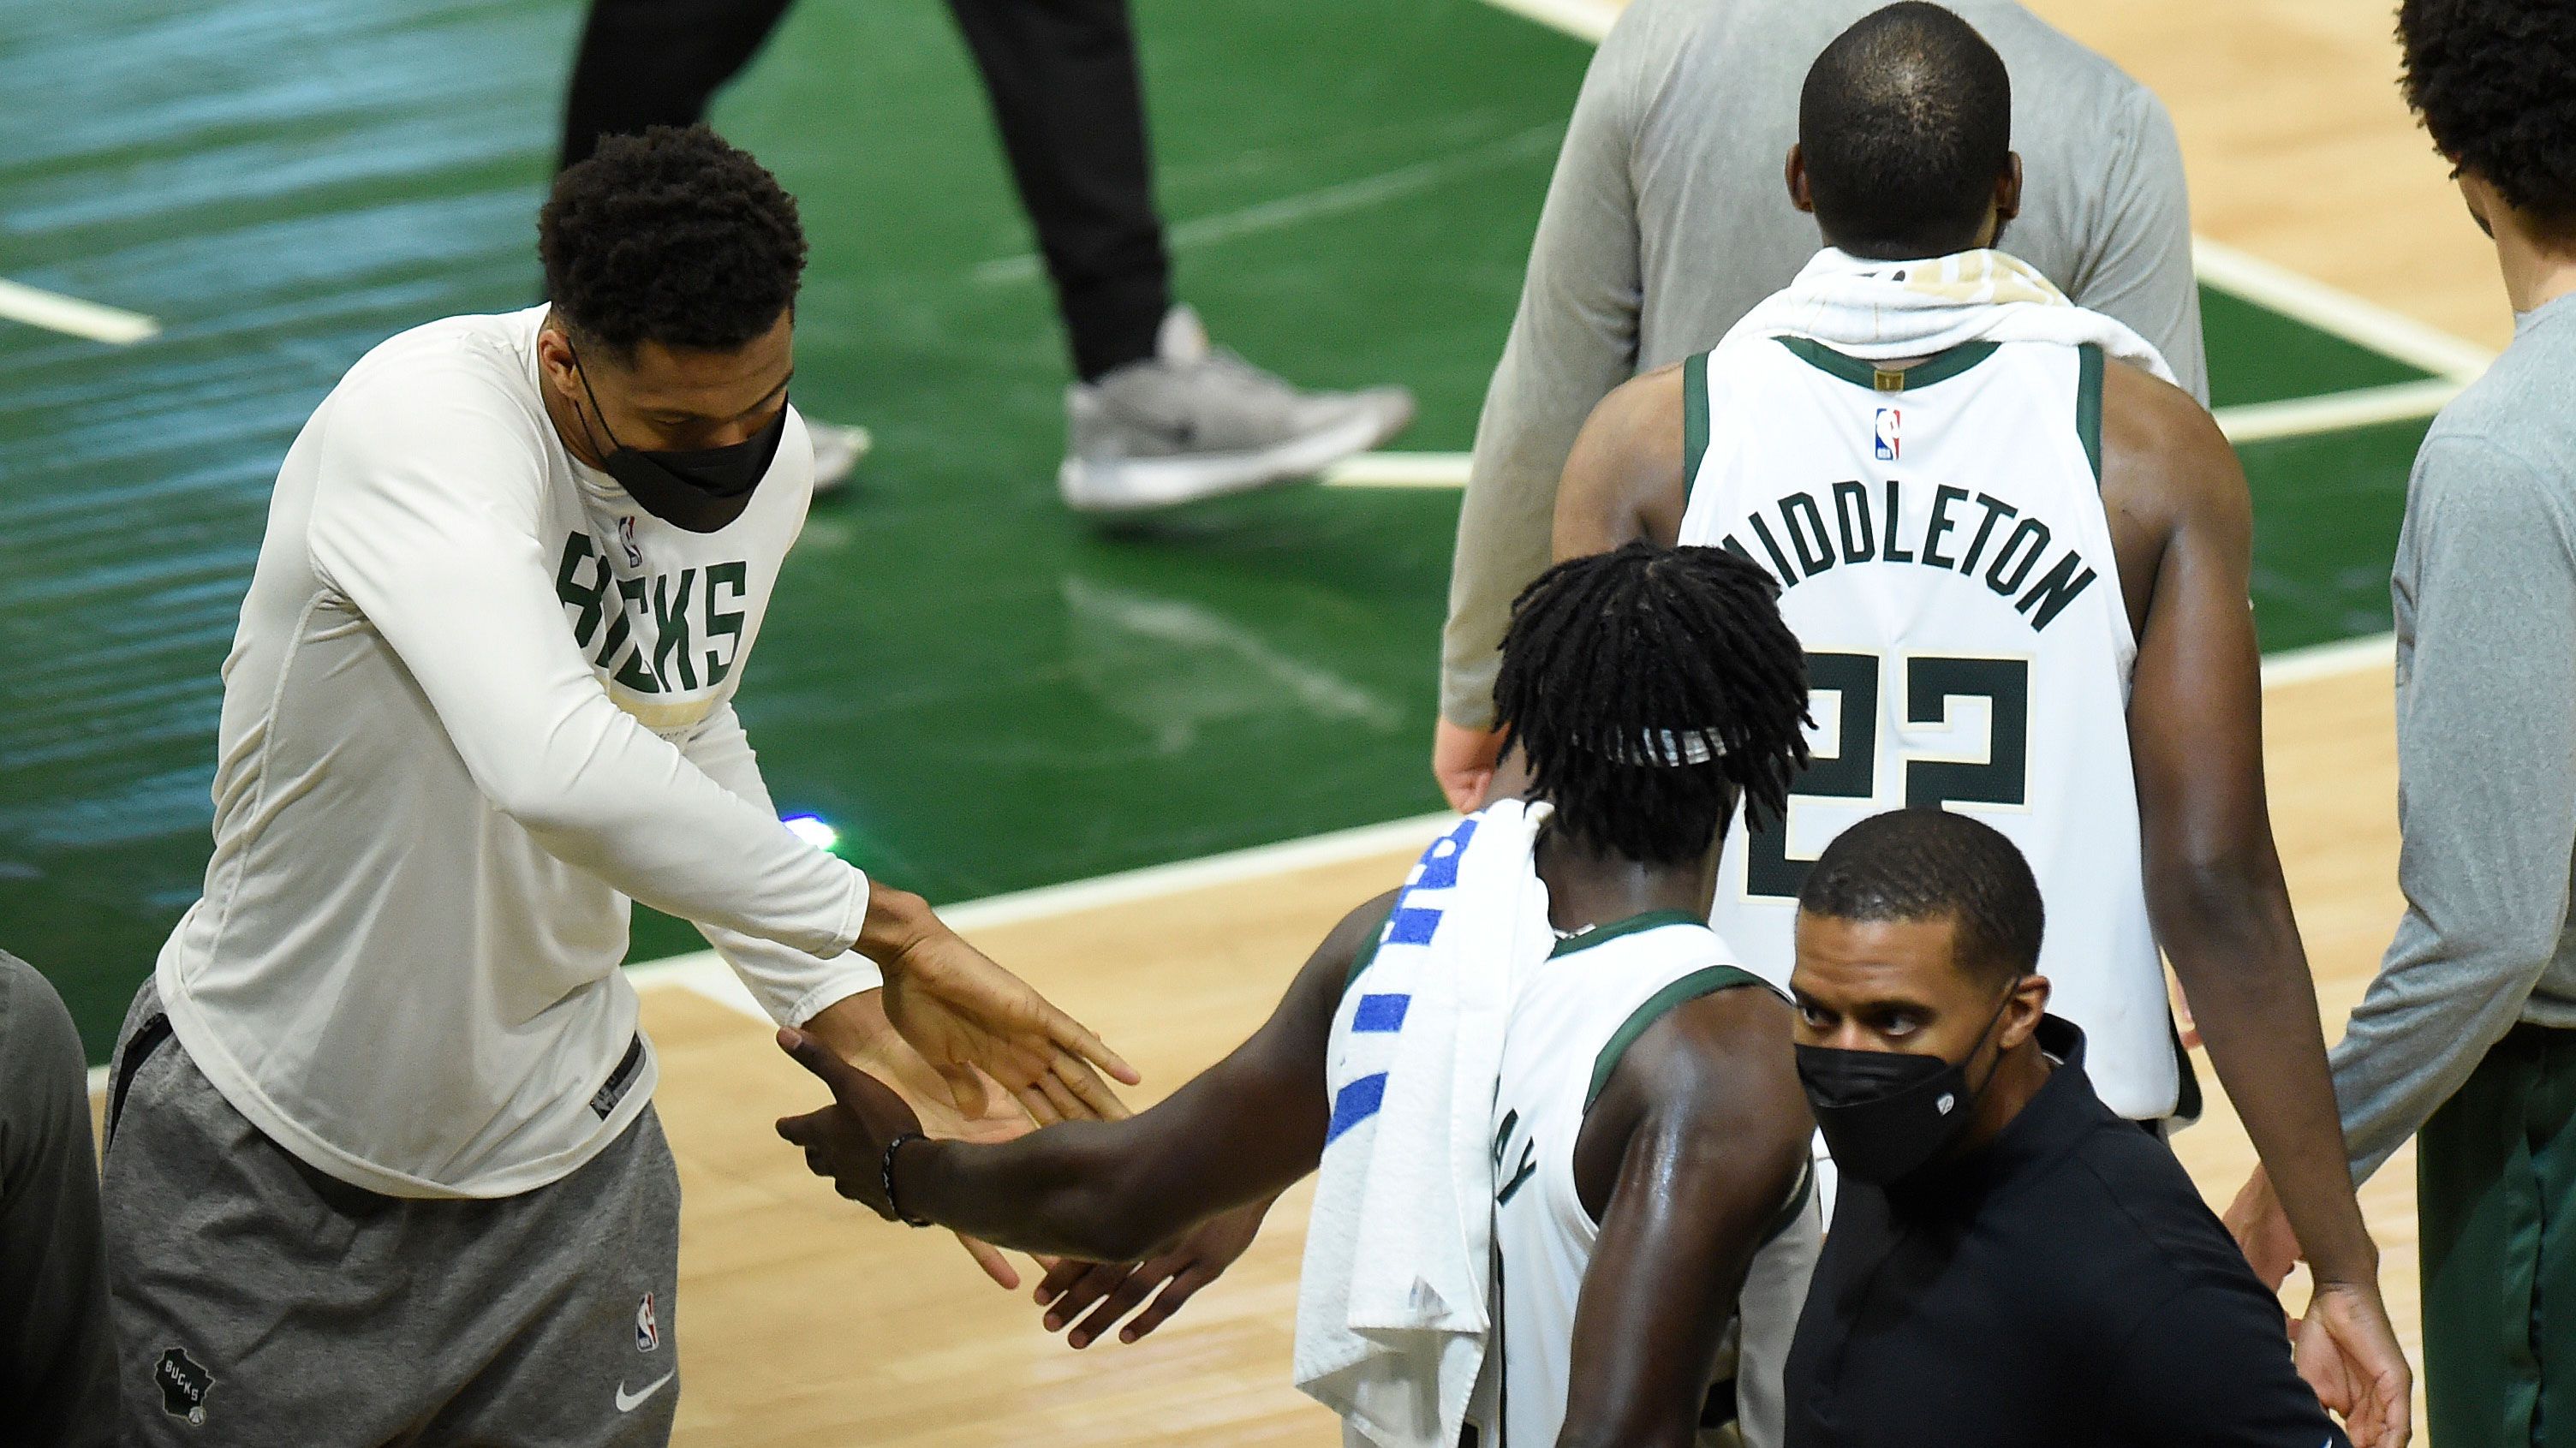 The injured Giannis Antetokounmpo supports his Bucks teammates.